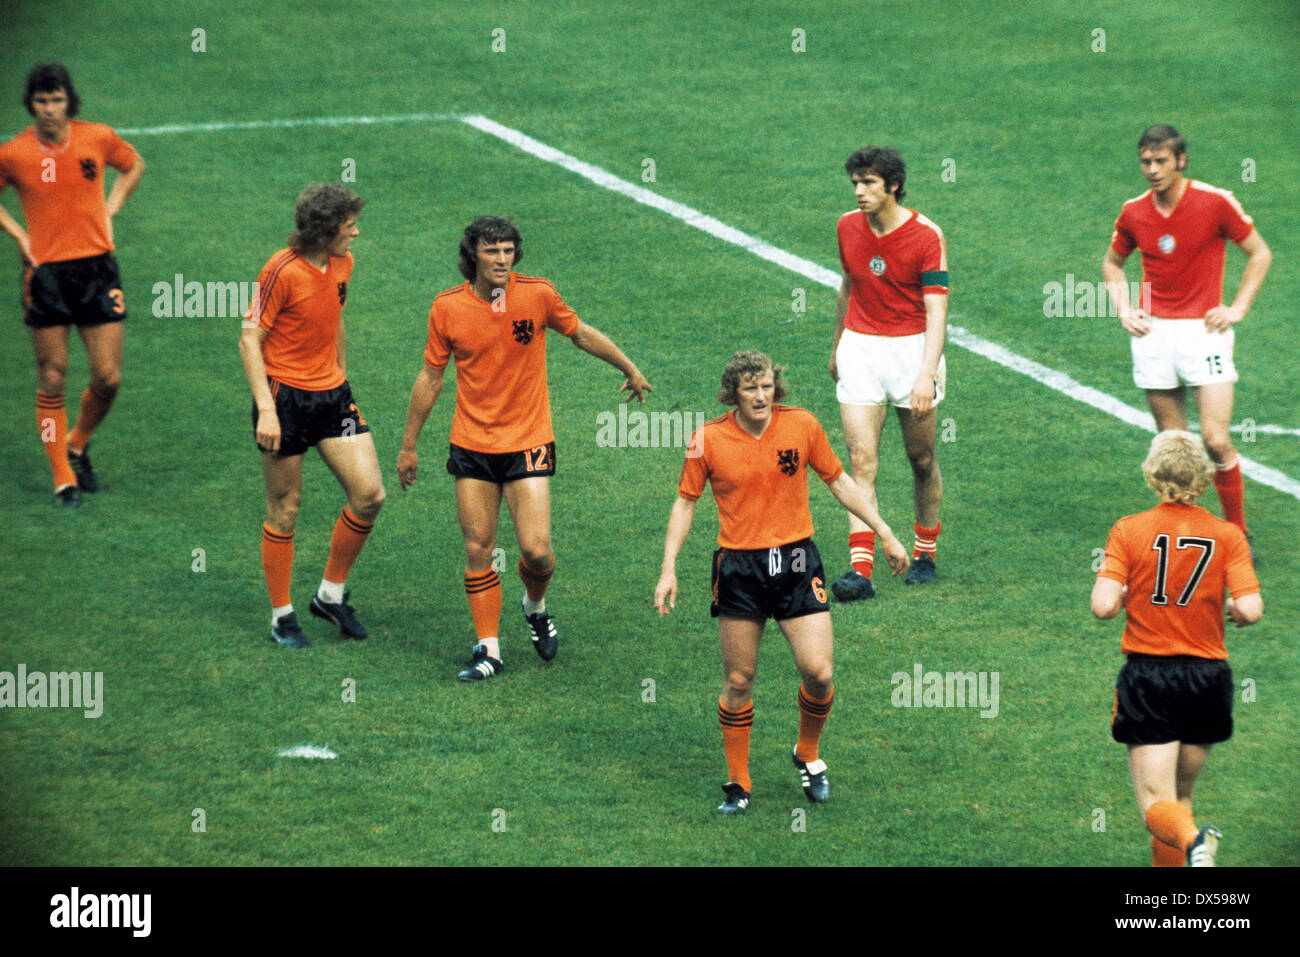 Fußball, WM, 1974, 1. Finalrunde, Gruppe III, Westfalenstadion Dortmund,  Deutschland vs. Niederlande 1:4, Szene des Spiels Stockfotografie - Alamy